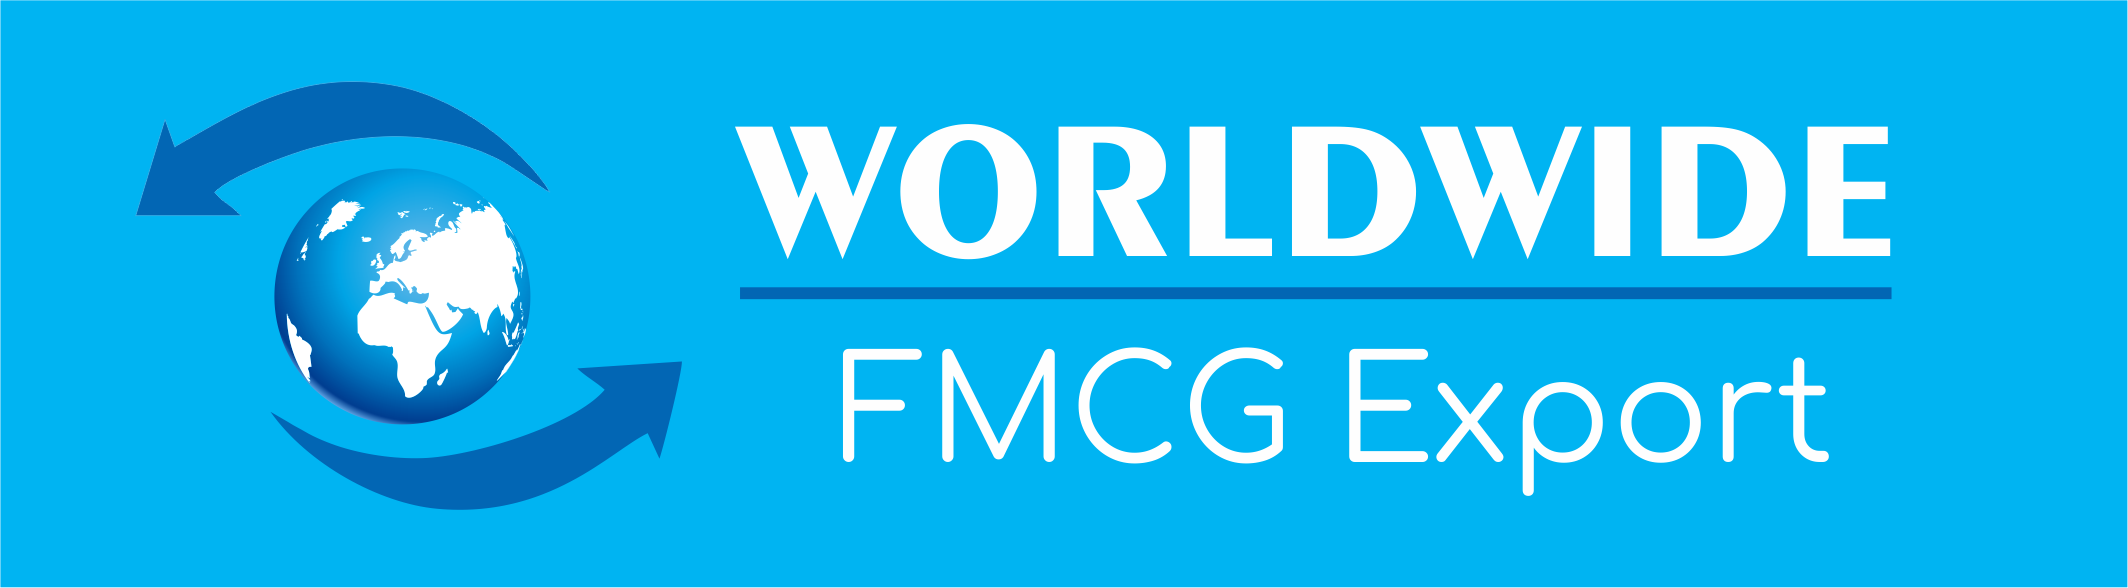 Worldwide FMCG Export